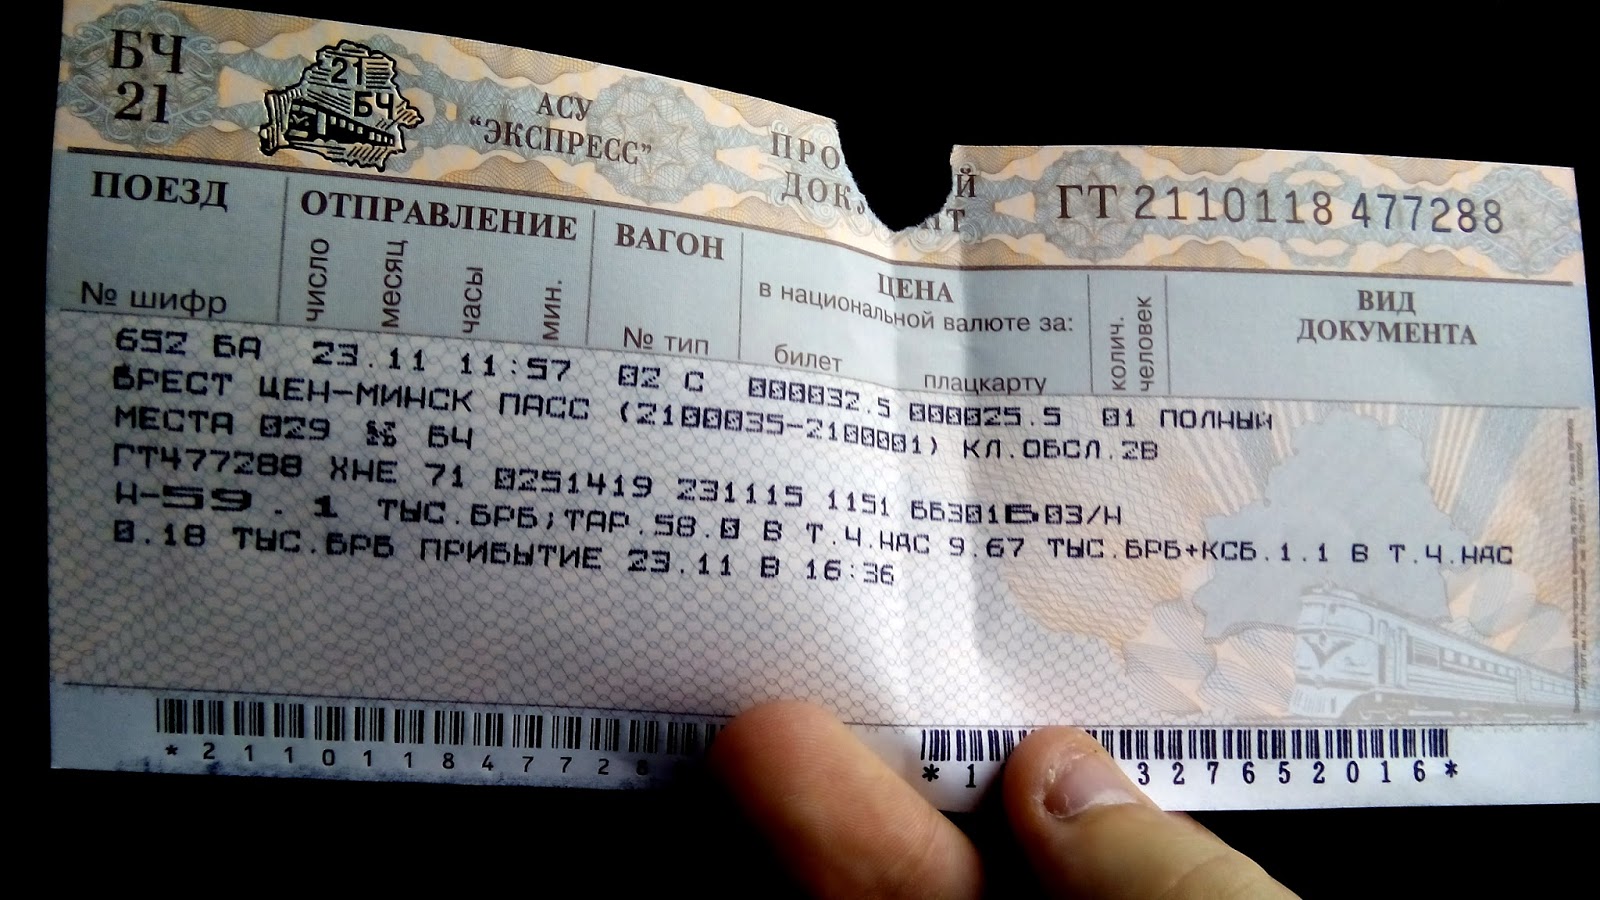 Пригород билеты. Билет в Минск плацкарт. Пясс. Пясс Денися. Пяссы.